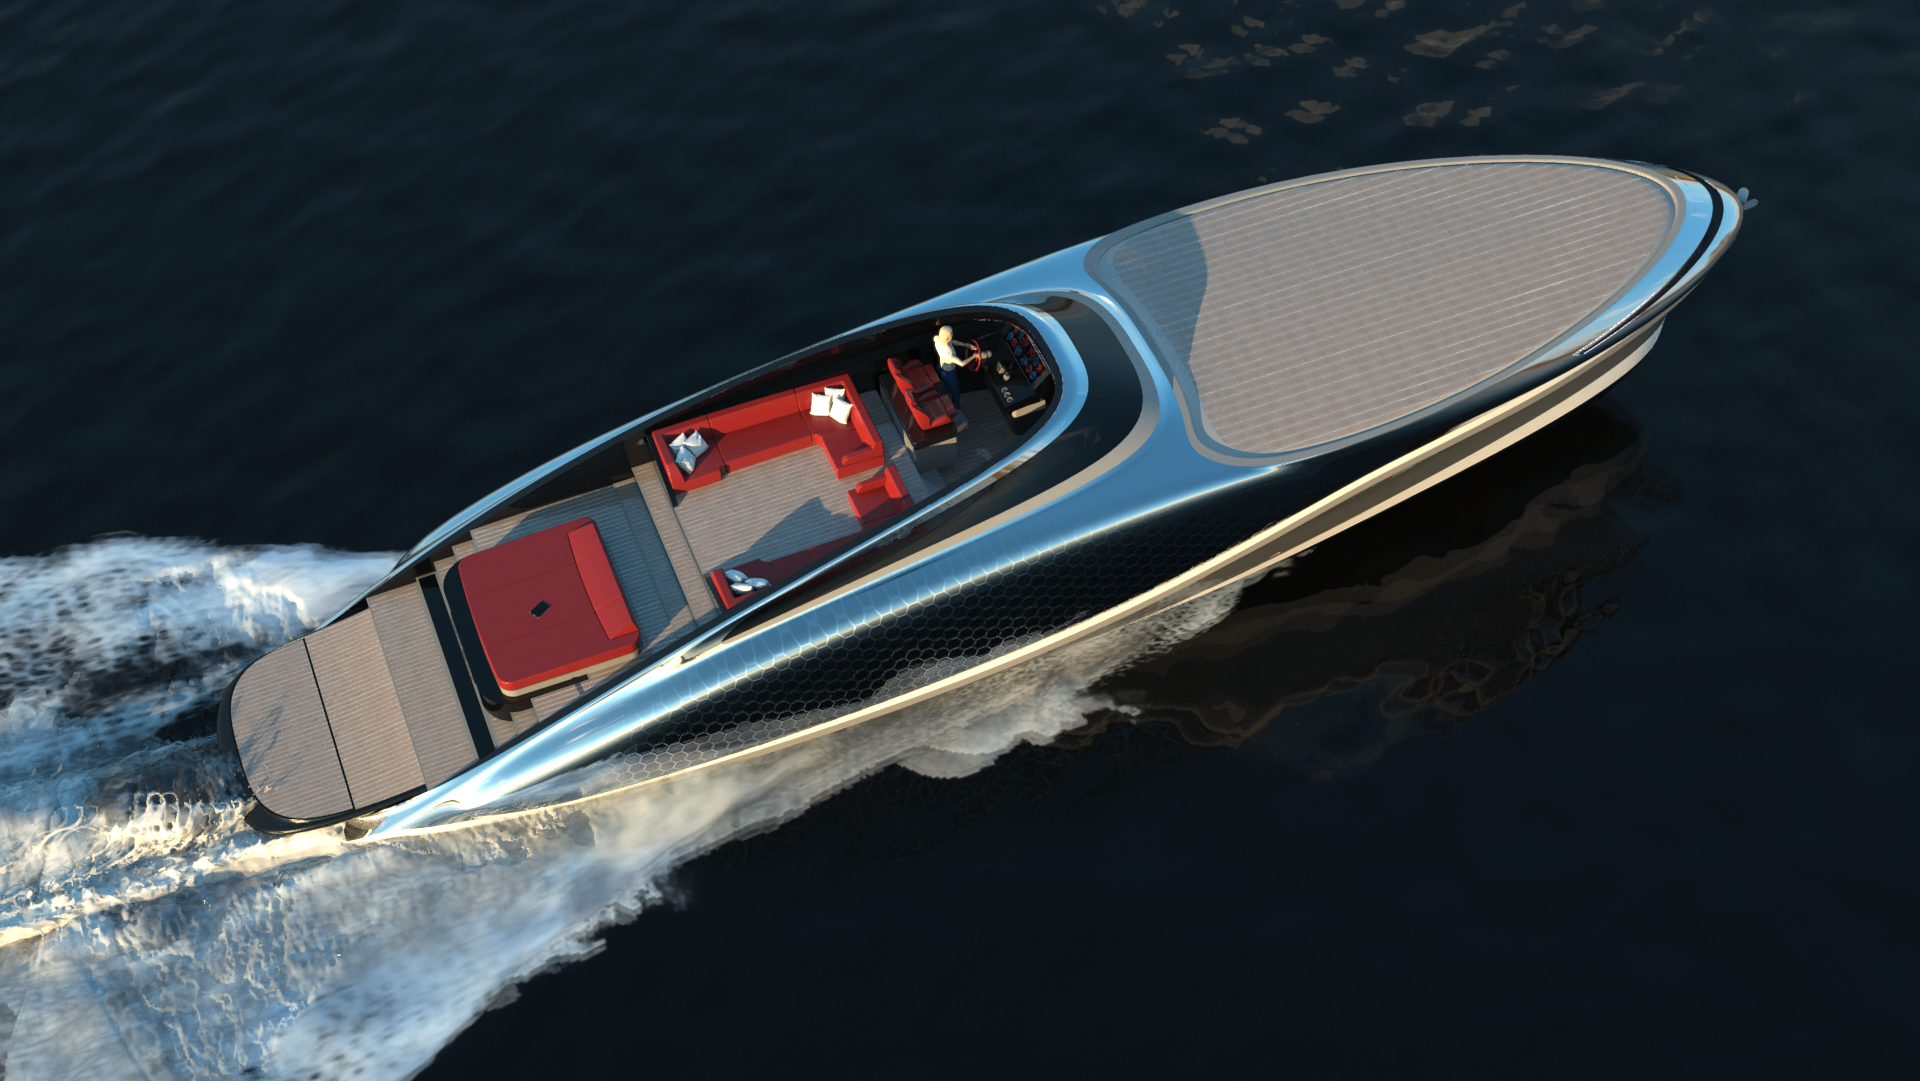 imagen 7 de Embryon Hyperboat Concept, una nueva joya náutica de Lazzarini.